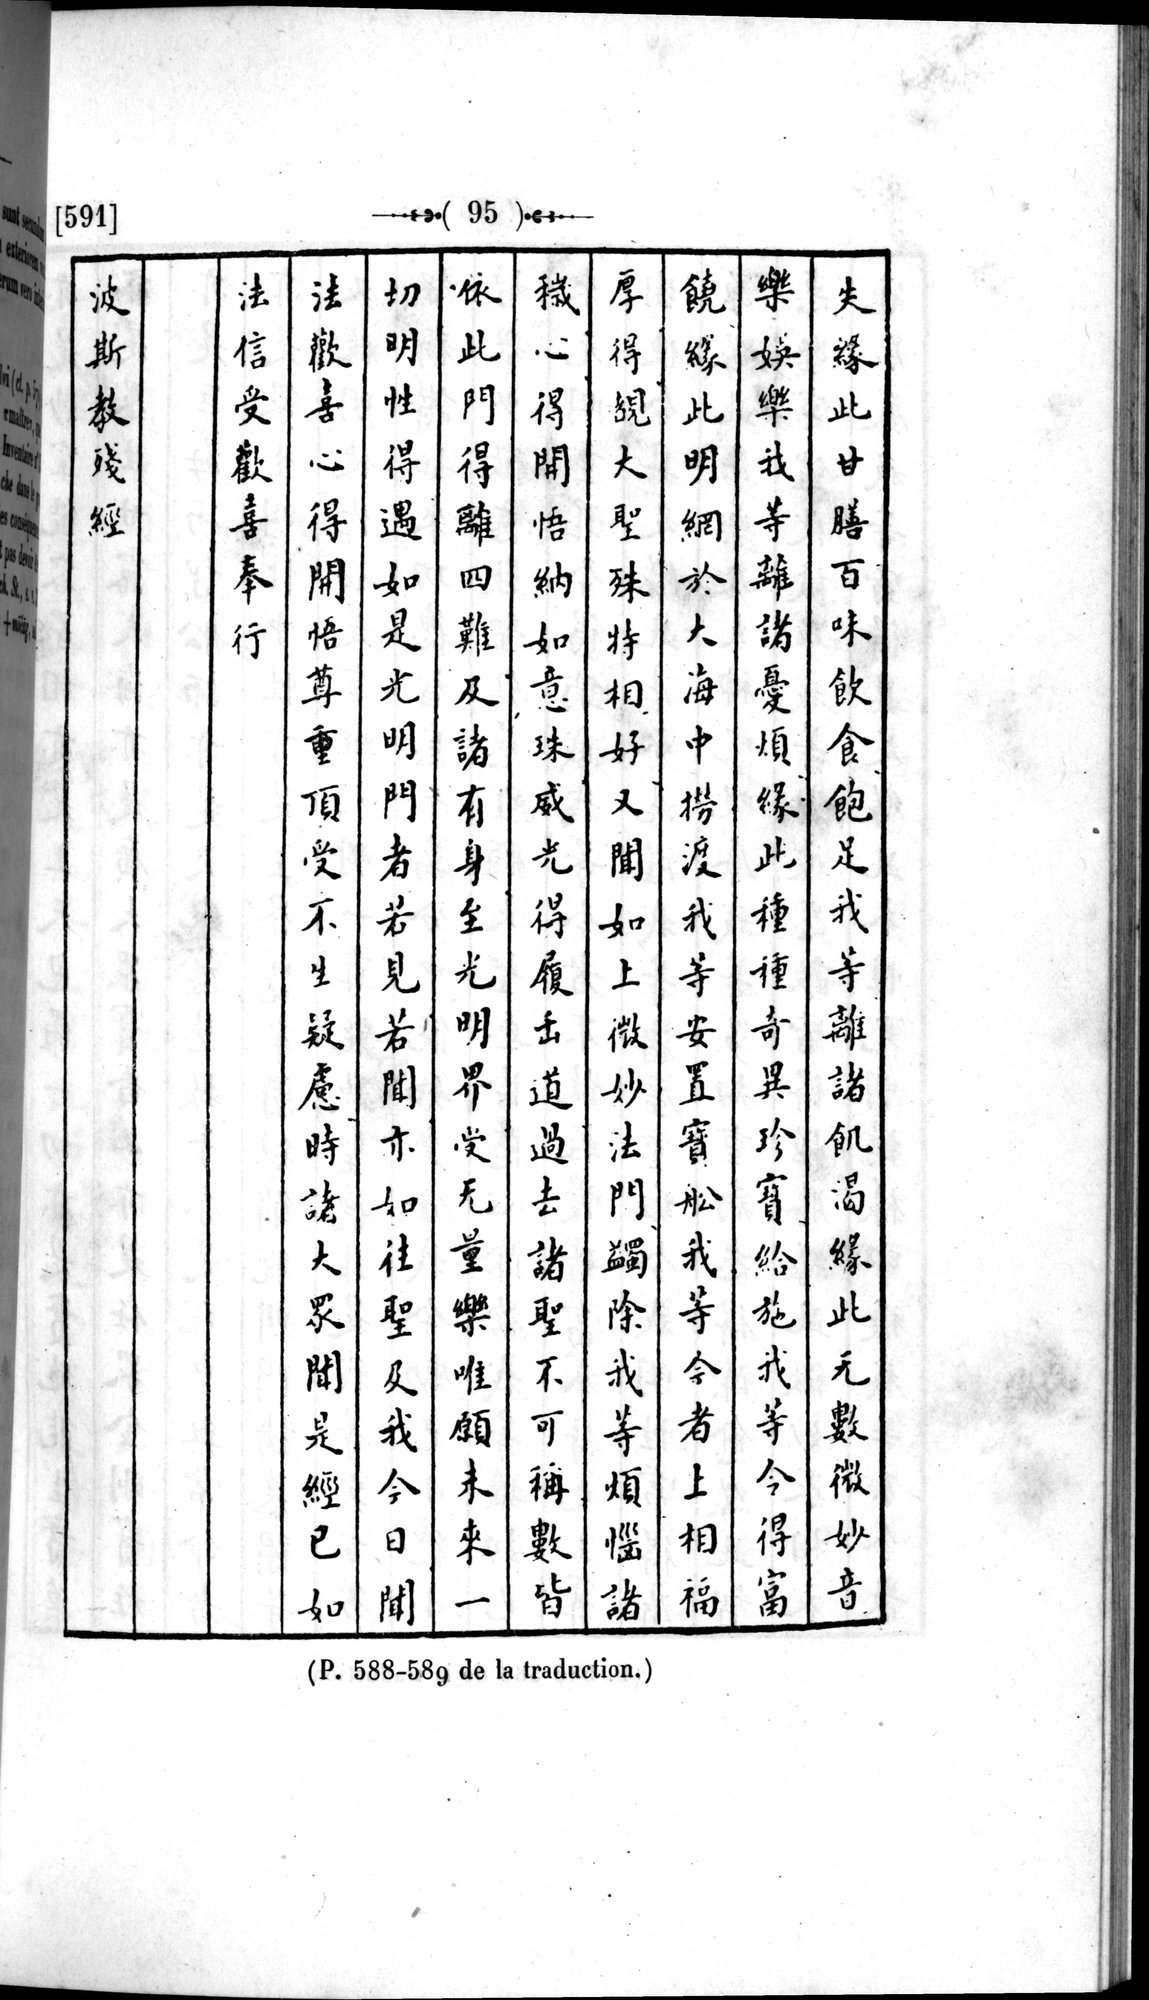 Un traité manichéen retrouvé en Chine : vol.1 / Page 105 (Grayscale High Resolution Image)